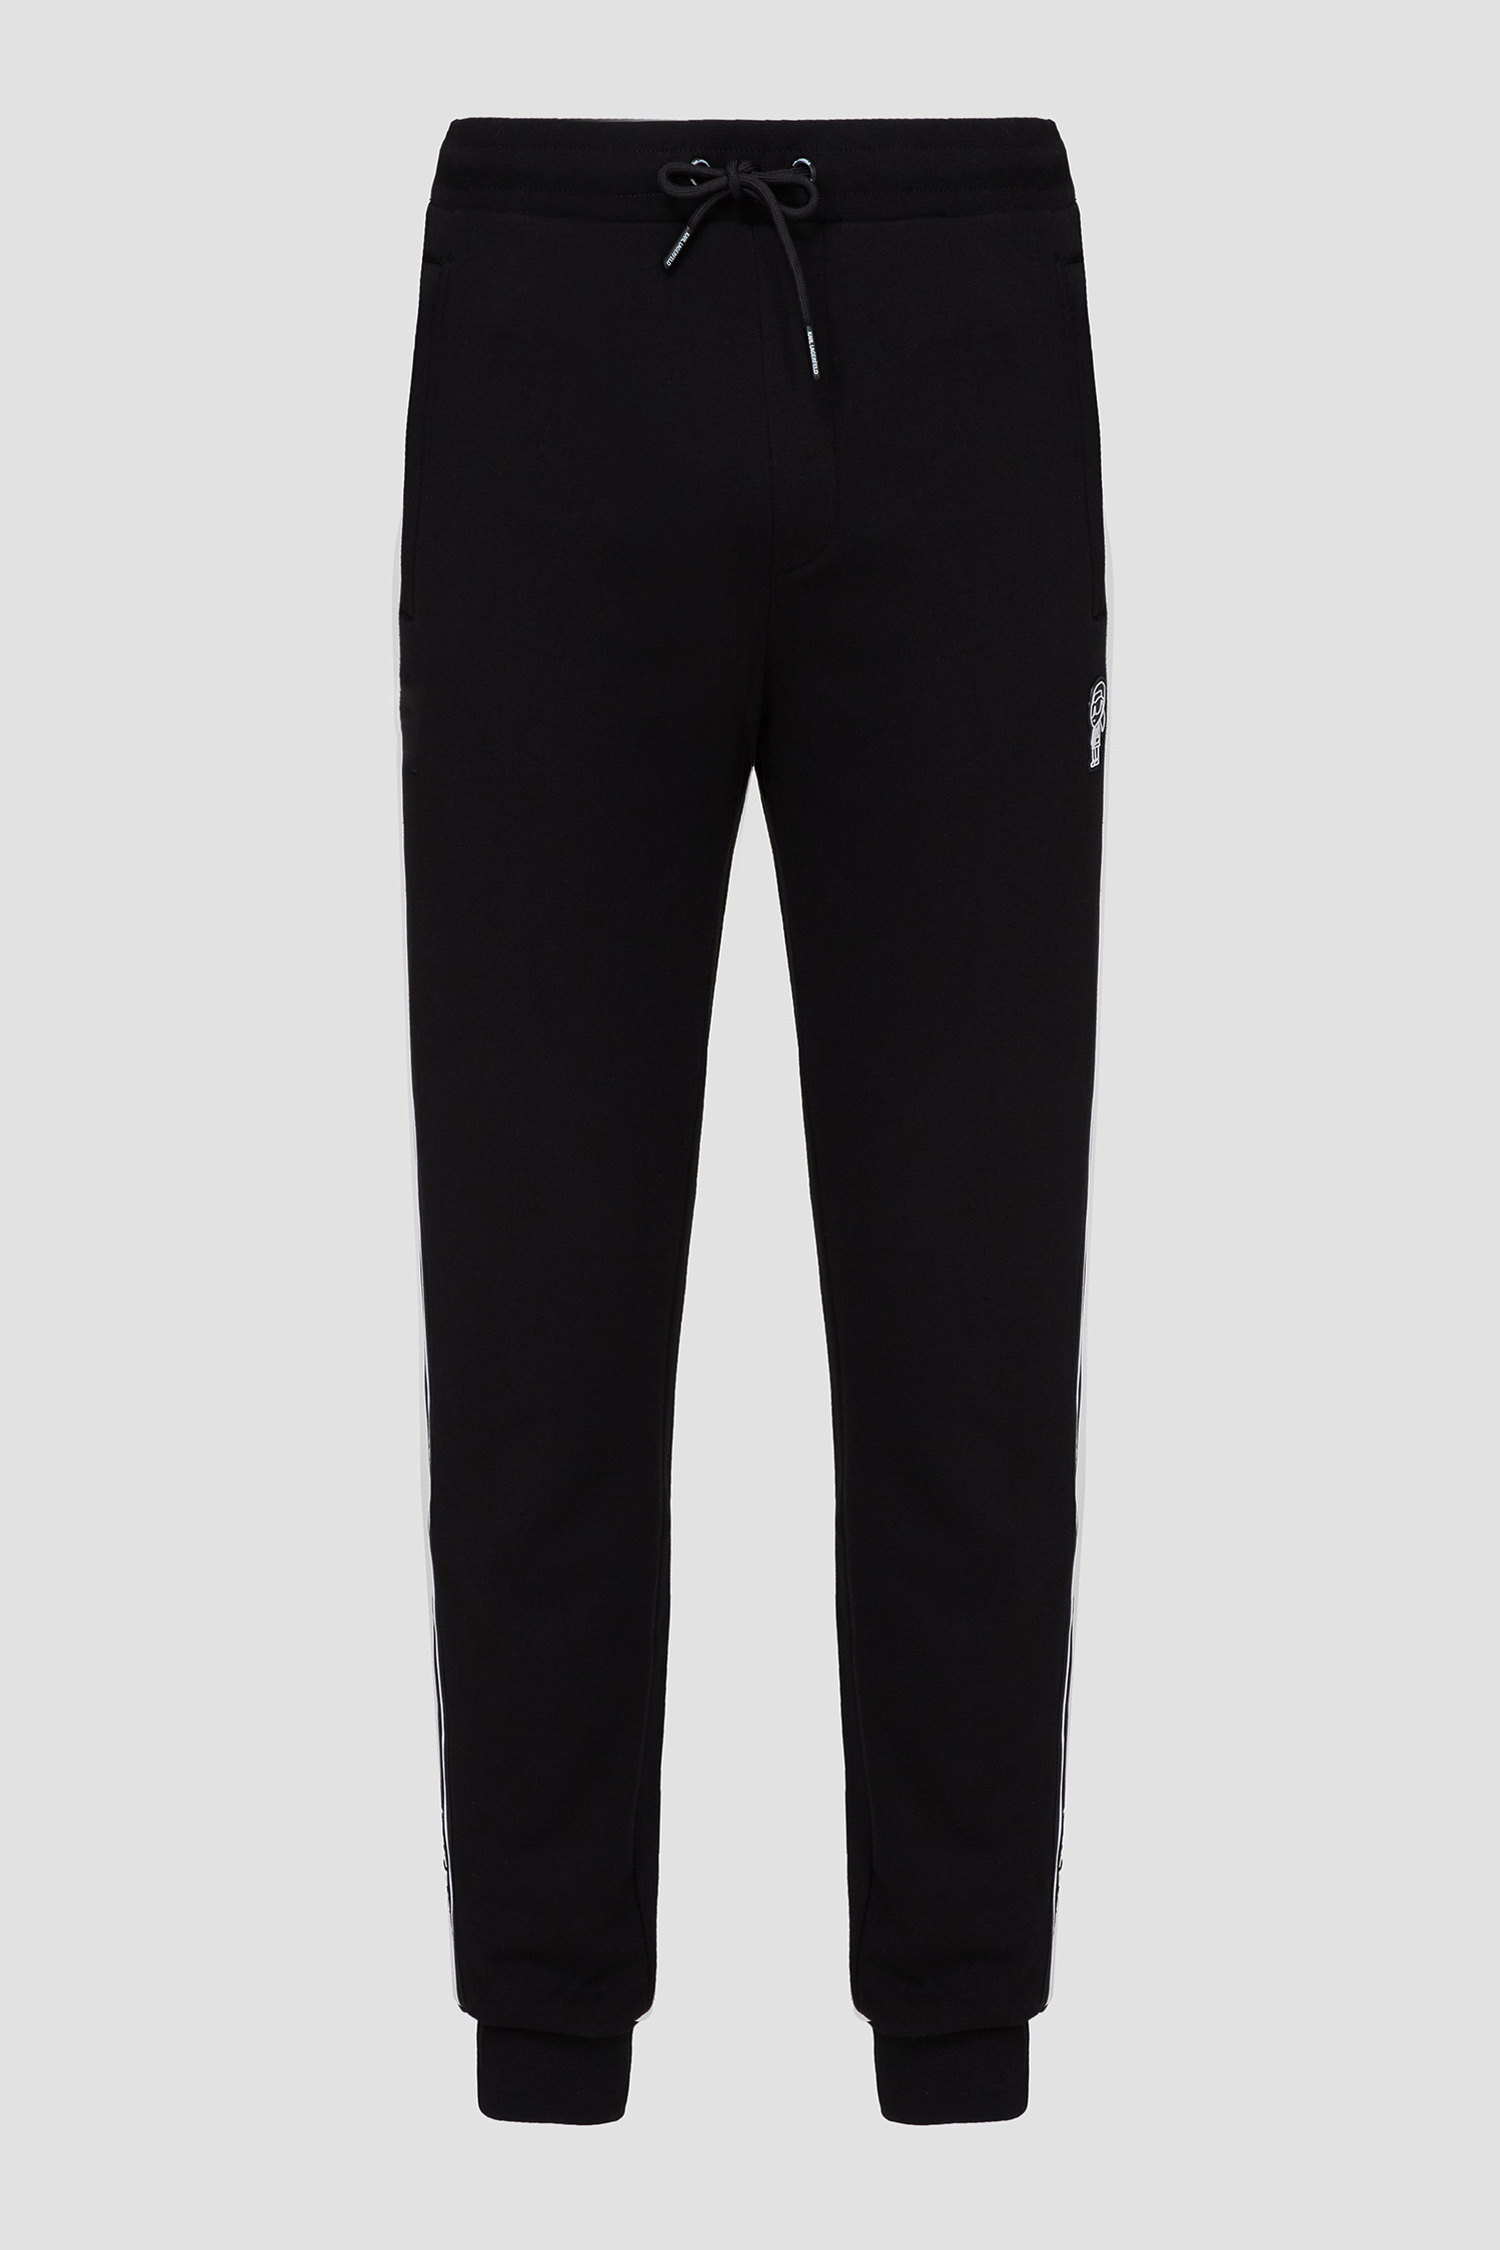 Мужские черные спортивные брюки Karl Lagerfeld 542900.705039;990